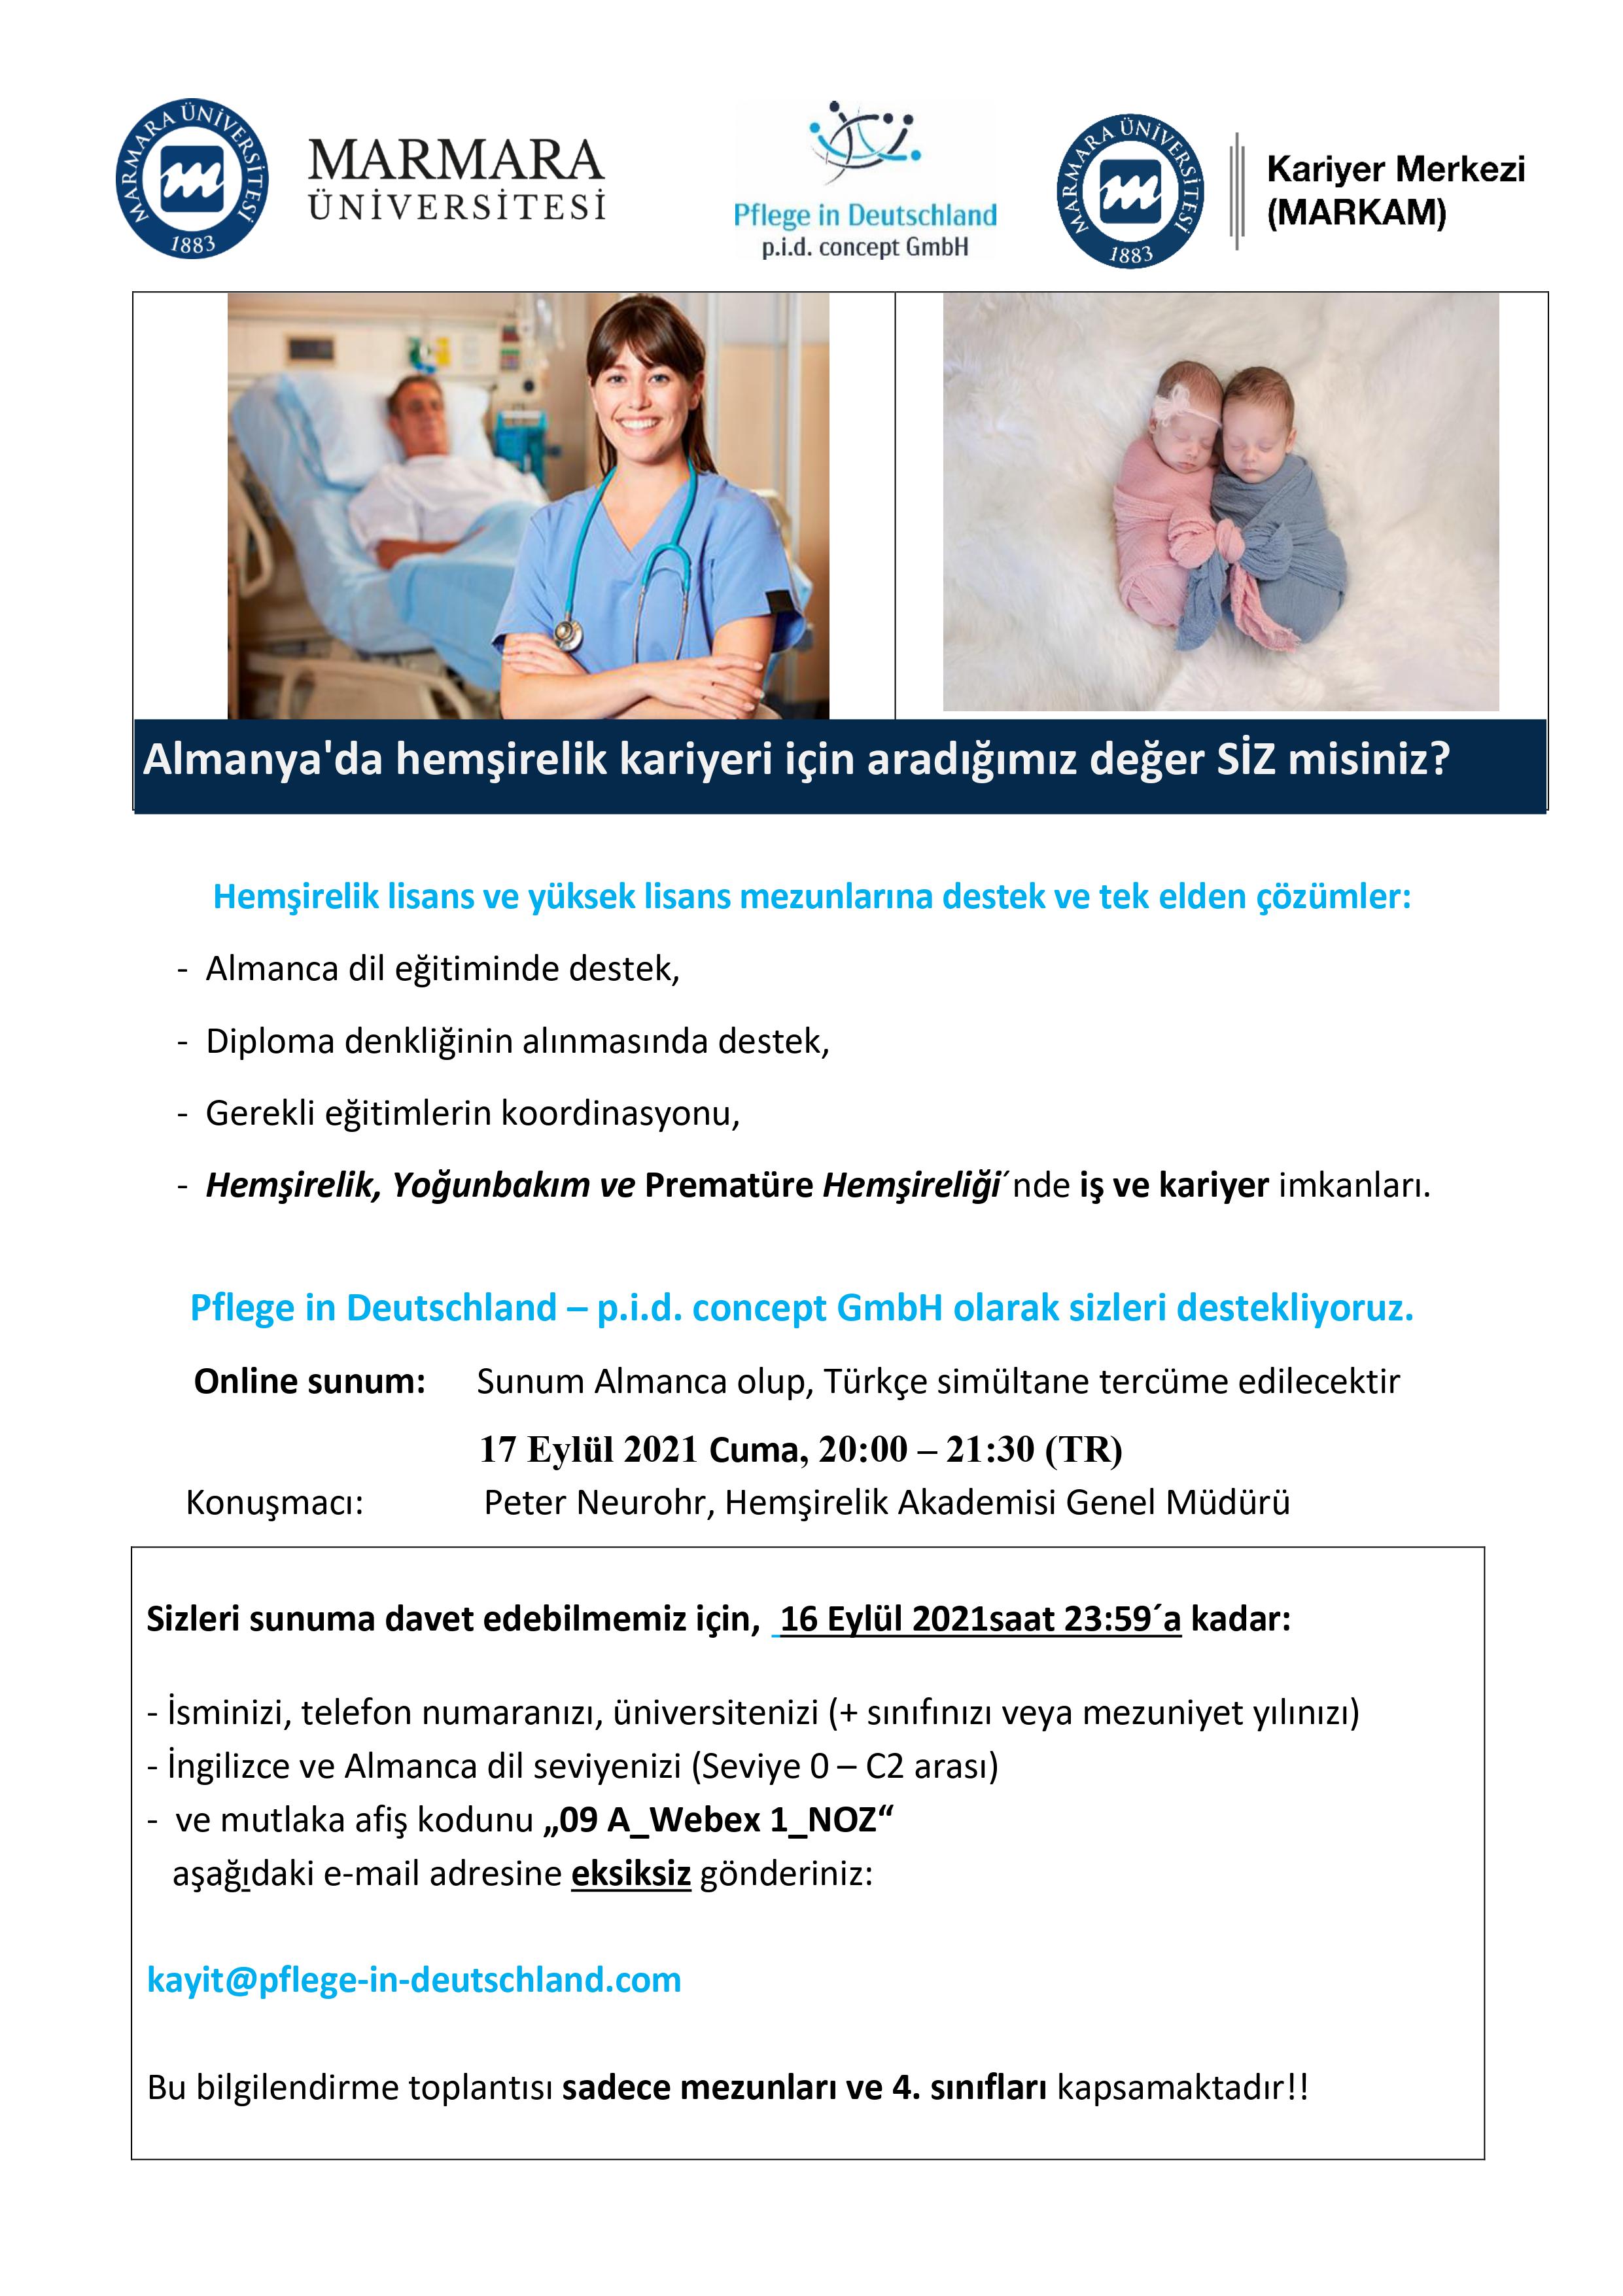 Almanya'da Hemşirelik Kariyeri İçin Aradığımız Değer Siz Misiniz17.09.2021.jpg (610 KB)